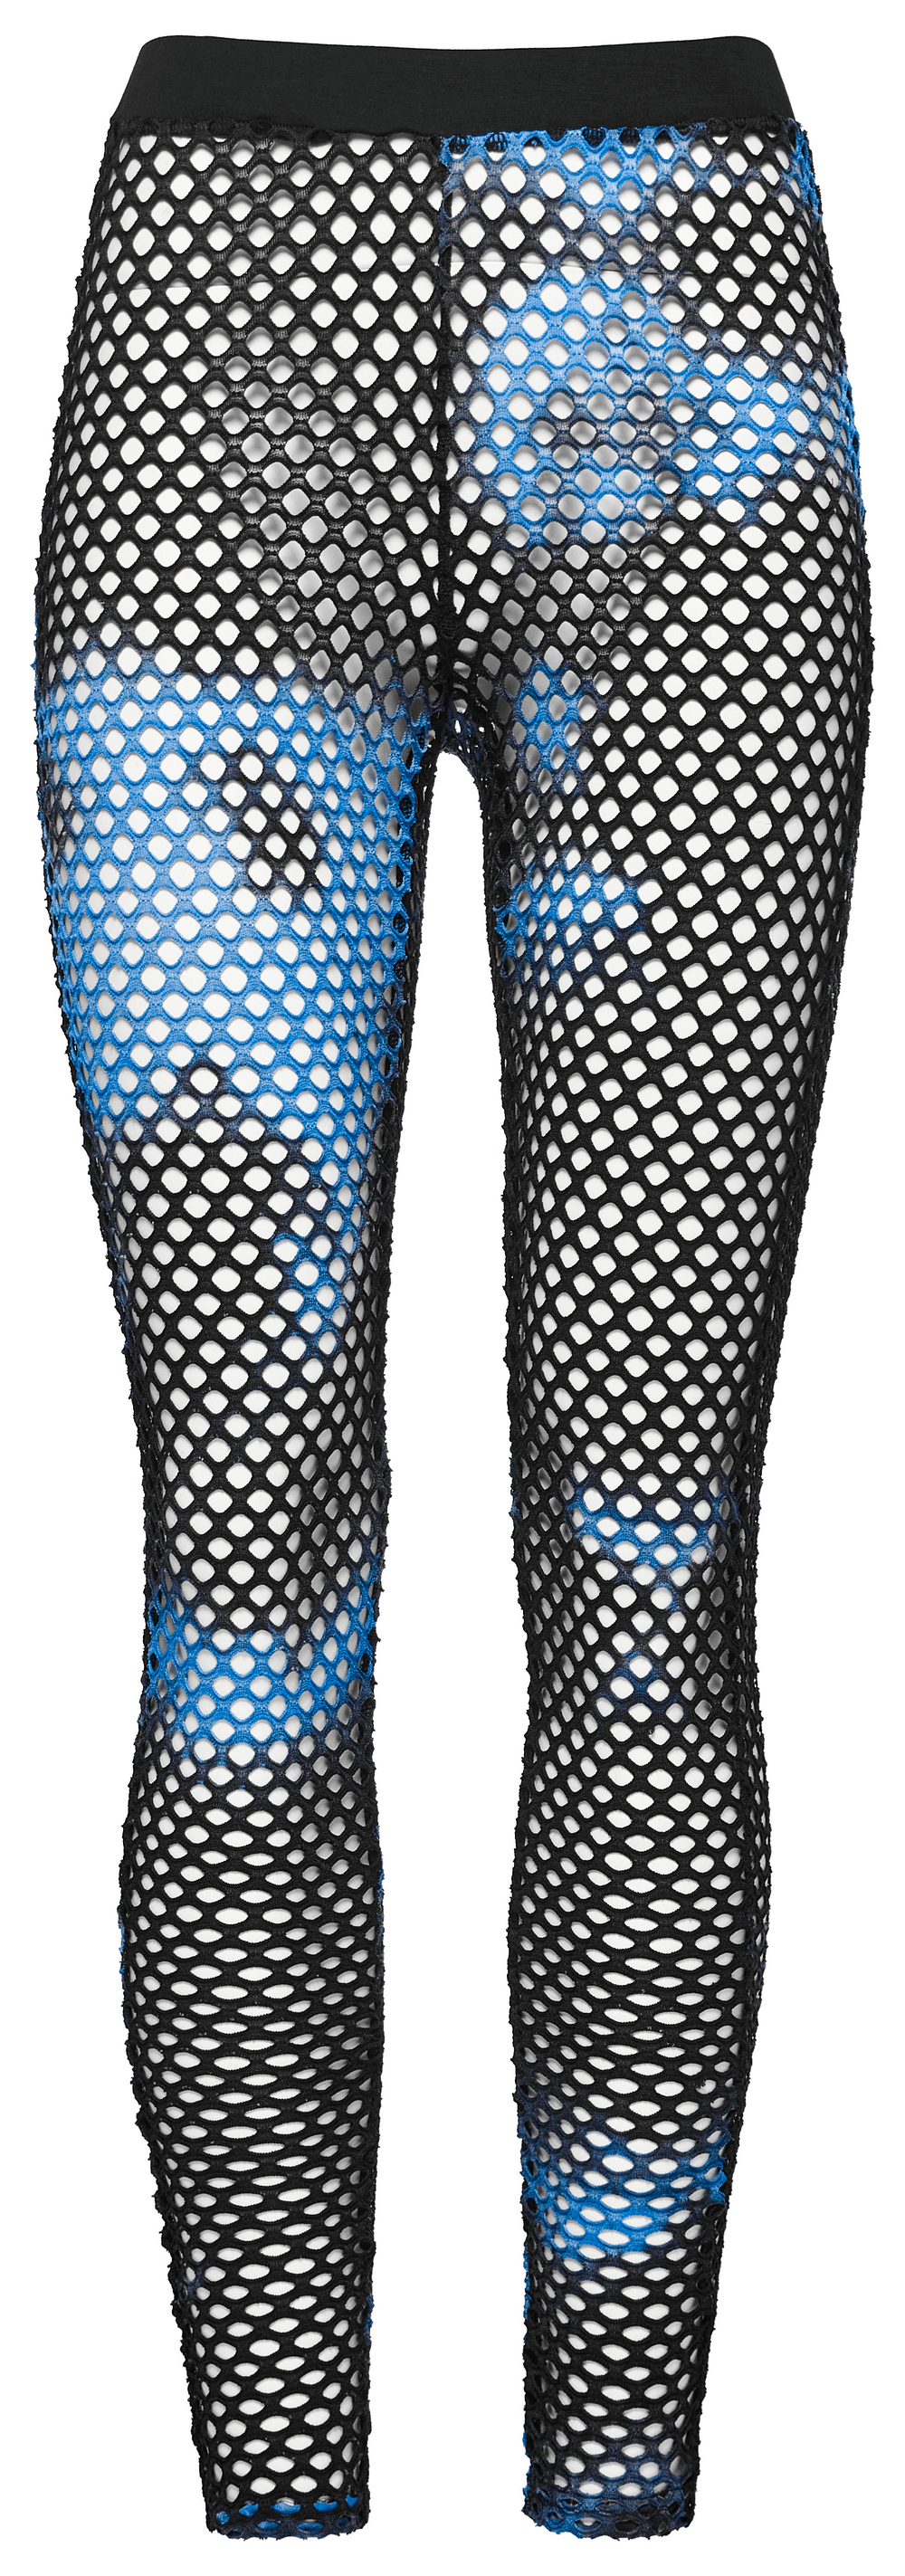 Female Stylish Black-Blue Fishnet Mesh Leggings